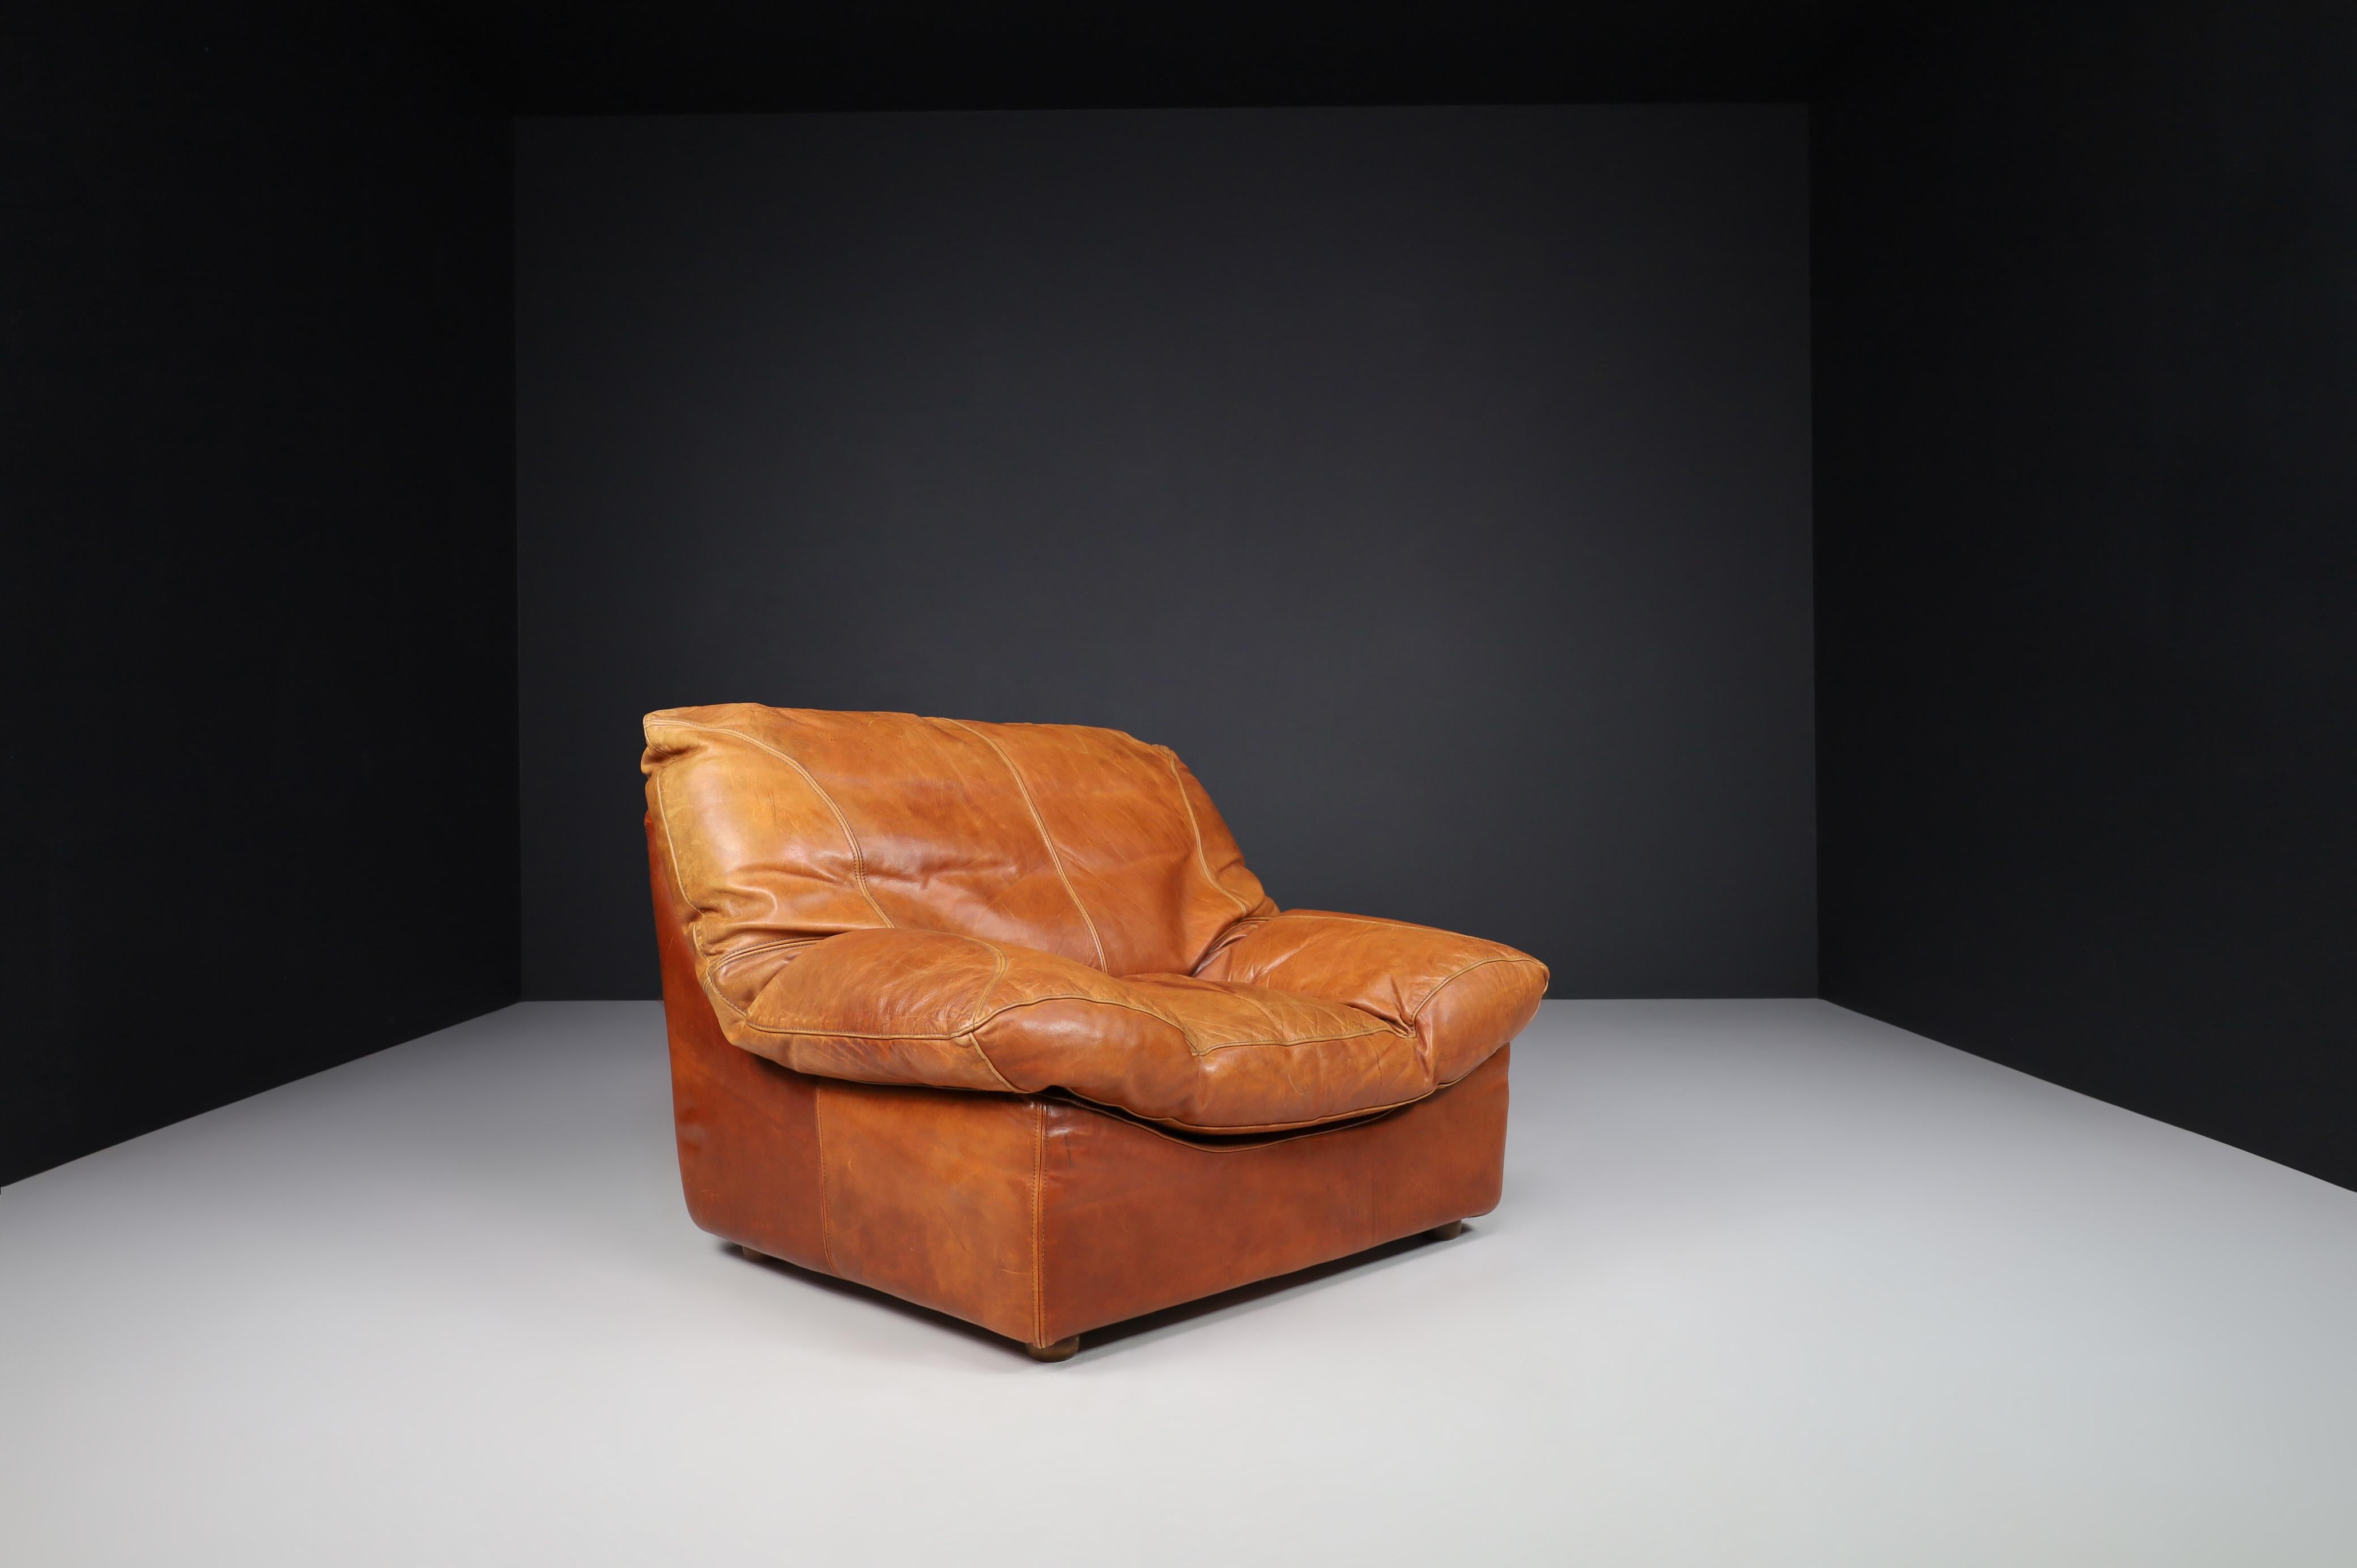 Sessel aus patiniertem Cognacleder, Frankreich 1970.

Überdimensionale, große, moderne Loungesessel mit geraden Linien und Formen laden zum Sitzen und Entspannen ein - entworfen in Frankreich in den 1970er Jahren. Wohlproportionierte Sessel aus